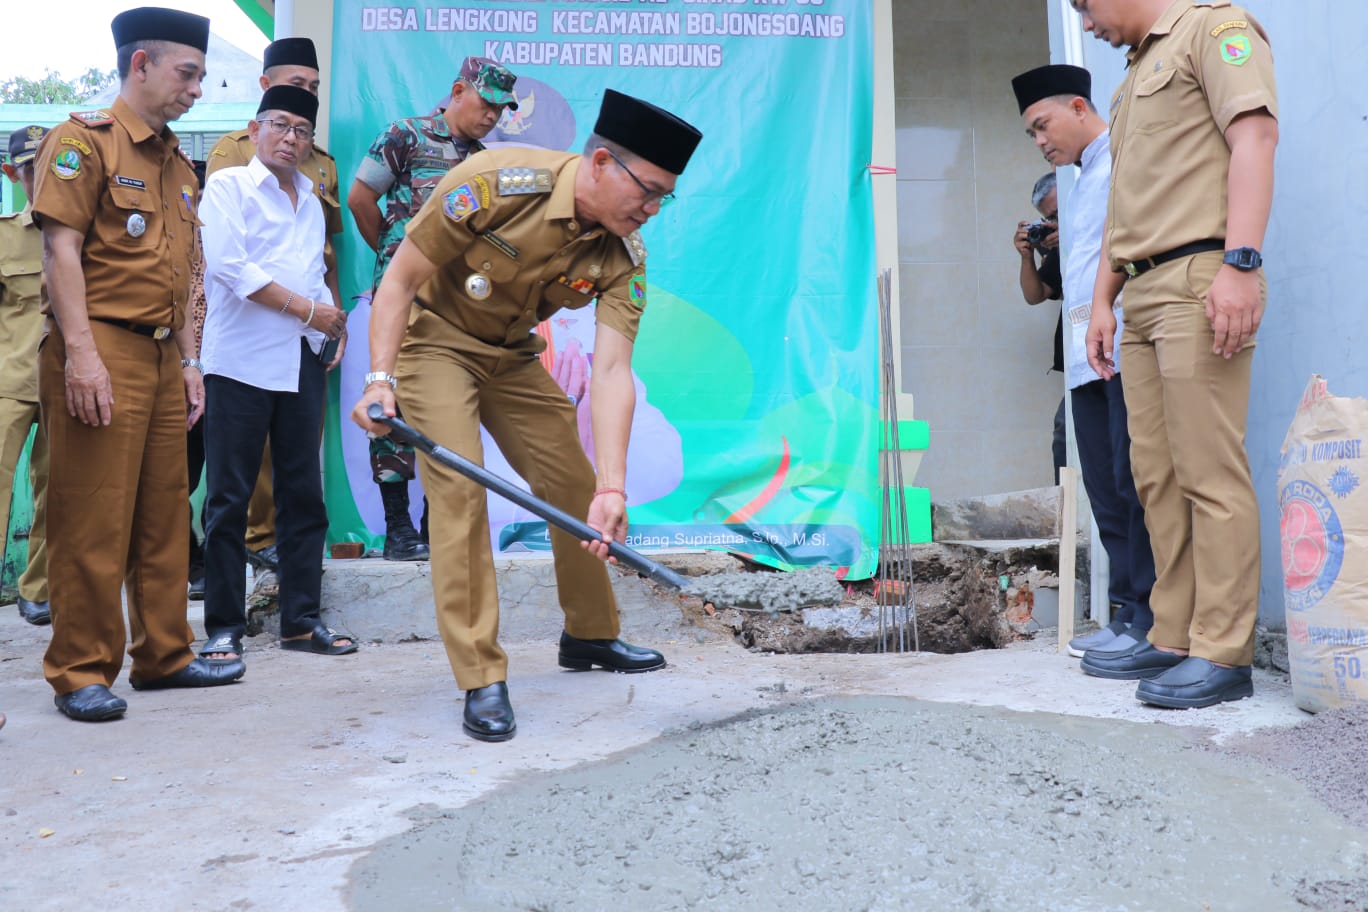 Bupati Bandung Laksanakan Peletakan Batu Pertama Renovasi Pembangunan Masjid Al Jihad